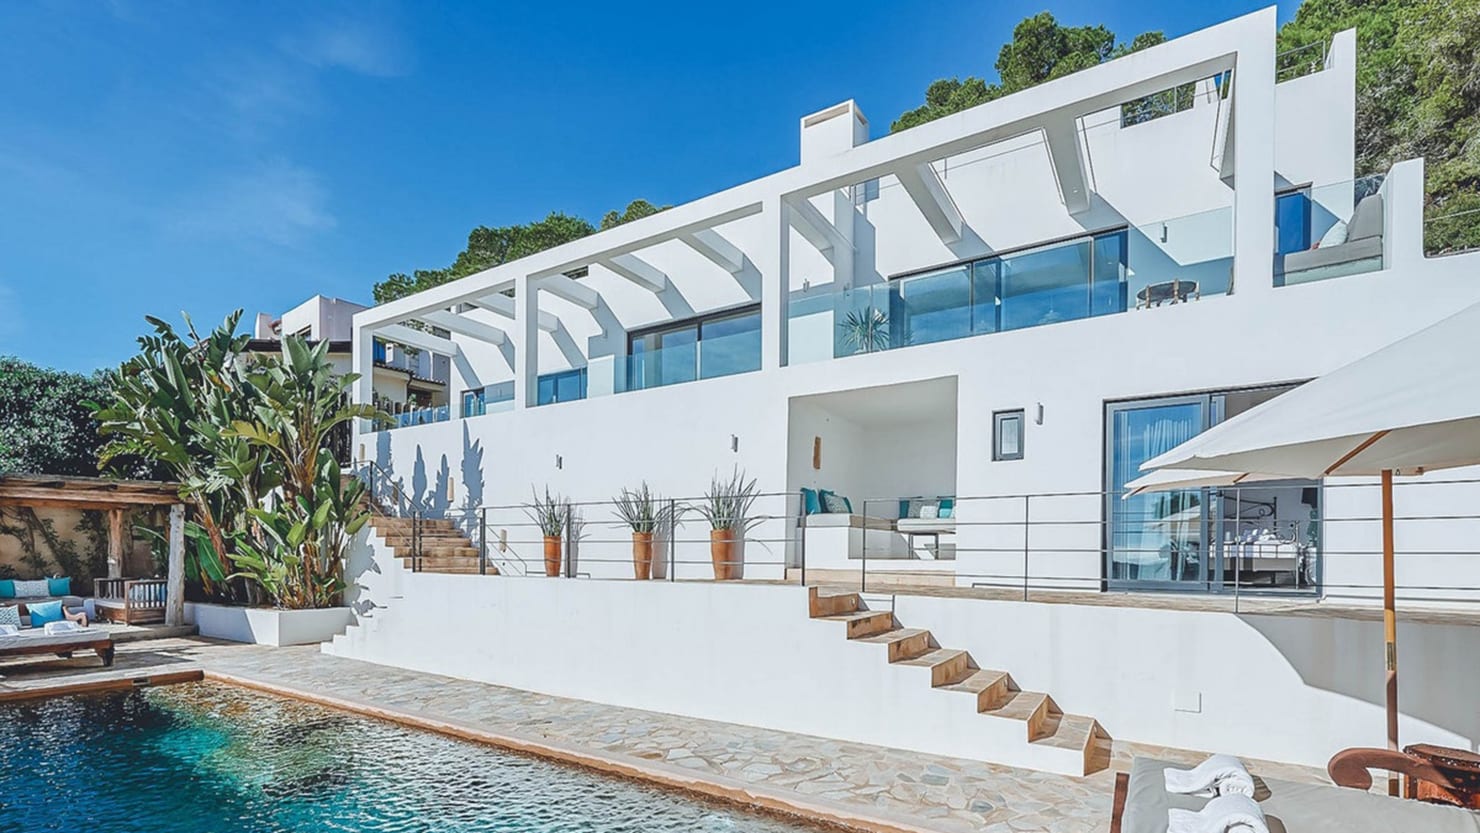 Dios mío, quiero alquilar esa casa: Es Cubells, Ibiza